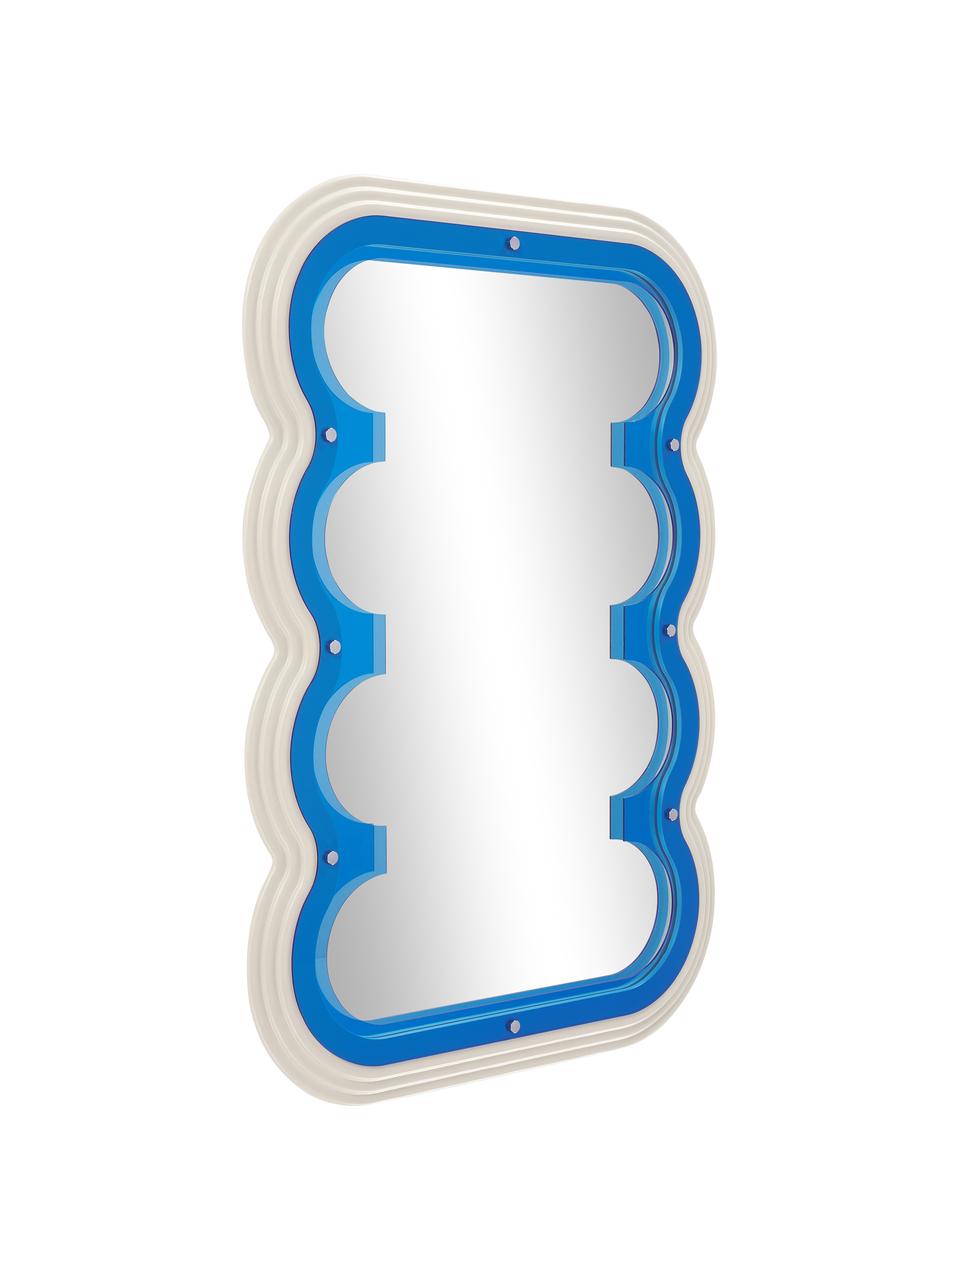 Wandspiegel Glenn mit blauem Acryl-Rahmen, Rahmen: Acryl, Rückseite: Mitteldichte Holzfaserpla, Spiegelfläche: Spiegelglas, Beige, Blau, B 70 x H 100 cm